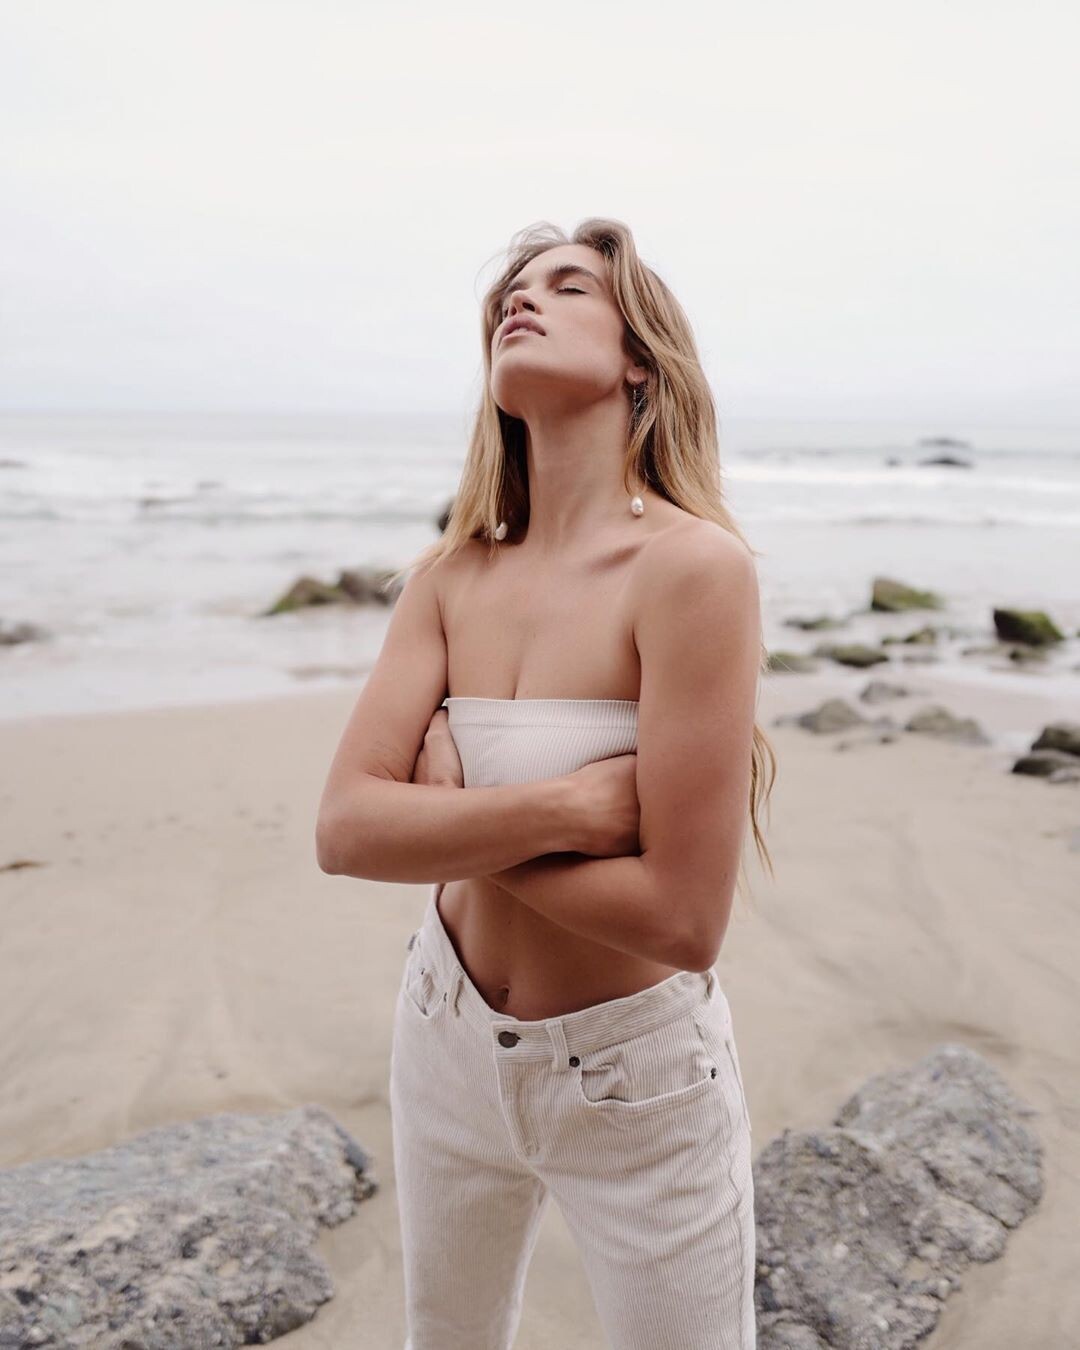 Stormi Bree Henley Sexy & Topless Collection (150 Photos + Videos)